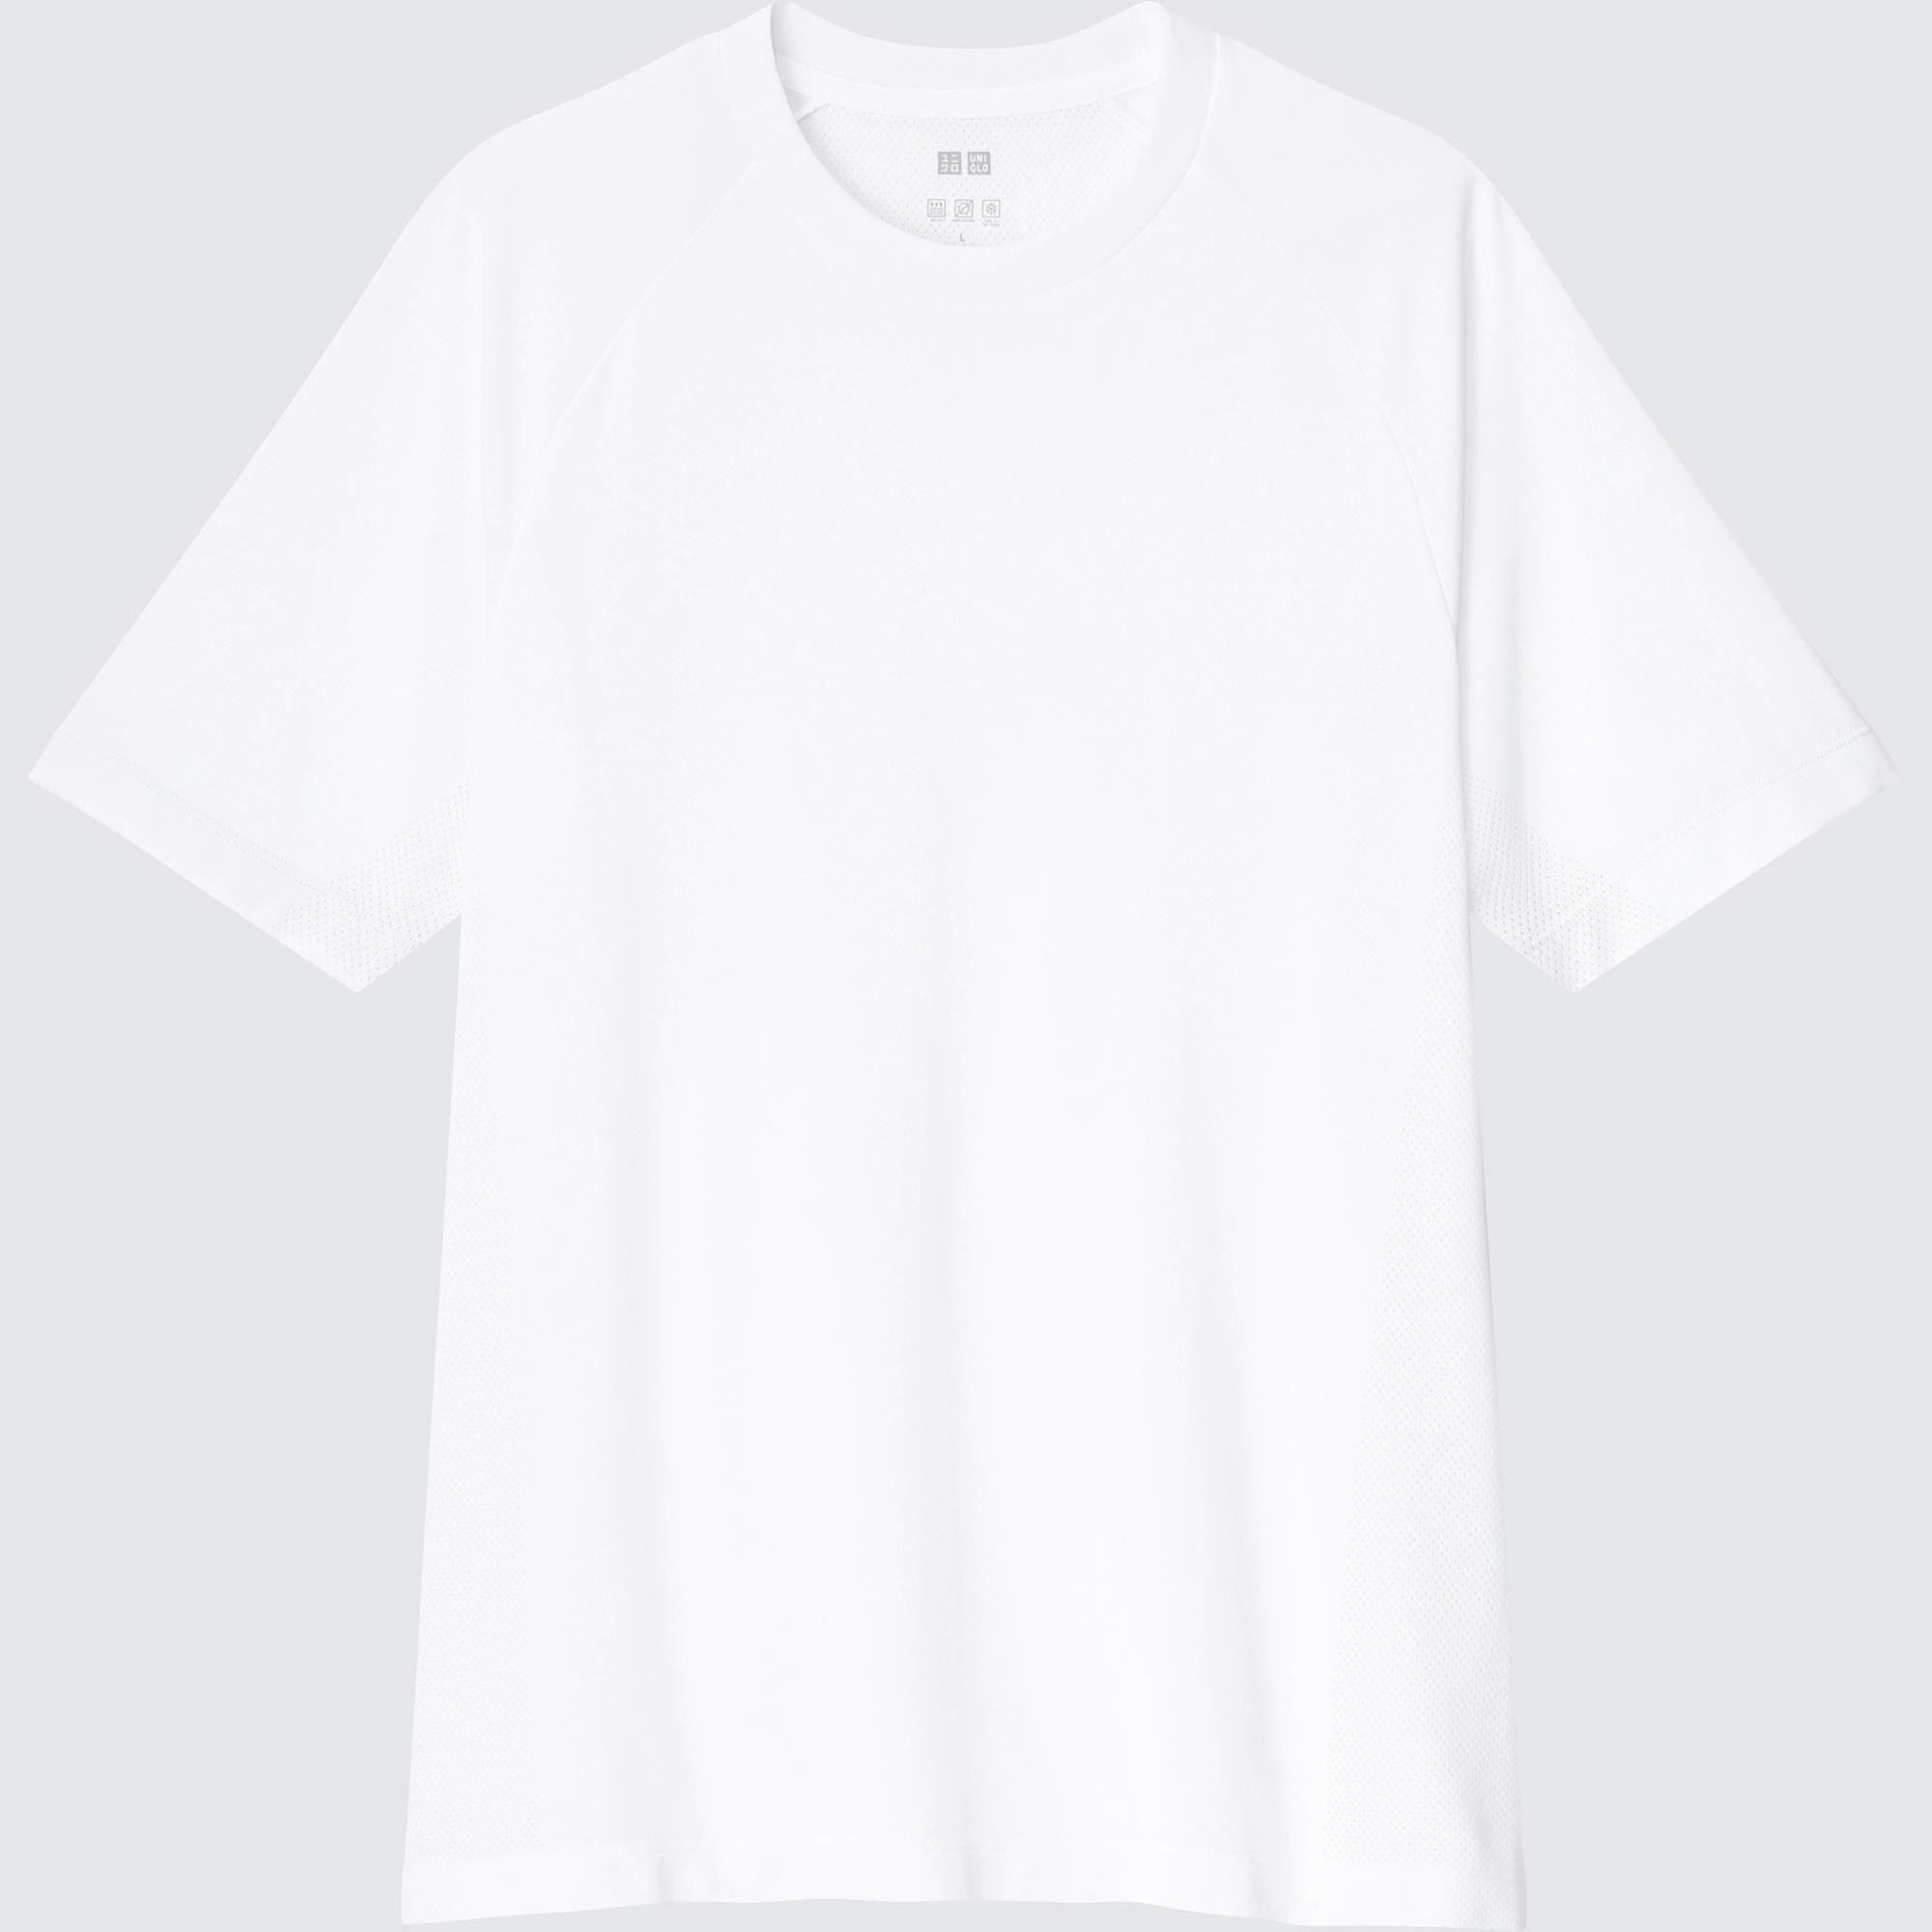 Original Uniqlo x Dragon Ball Z UT TShirt Mens Fashion Tops  Sets  Tshirts  Polo Shirts on Carousell